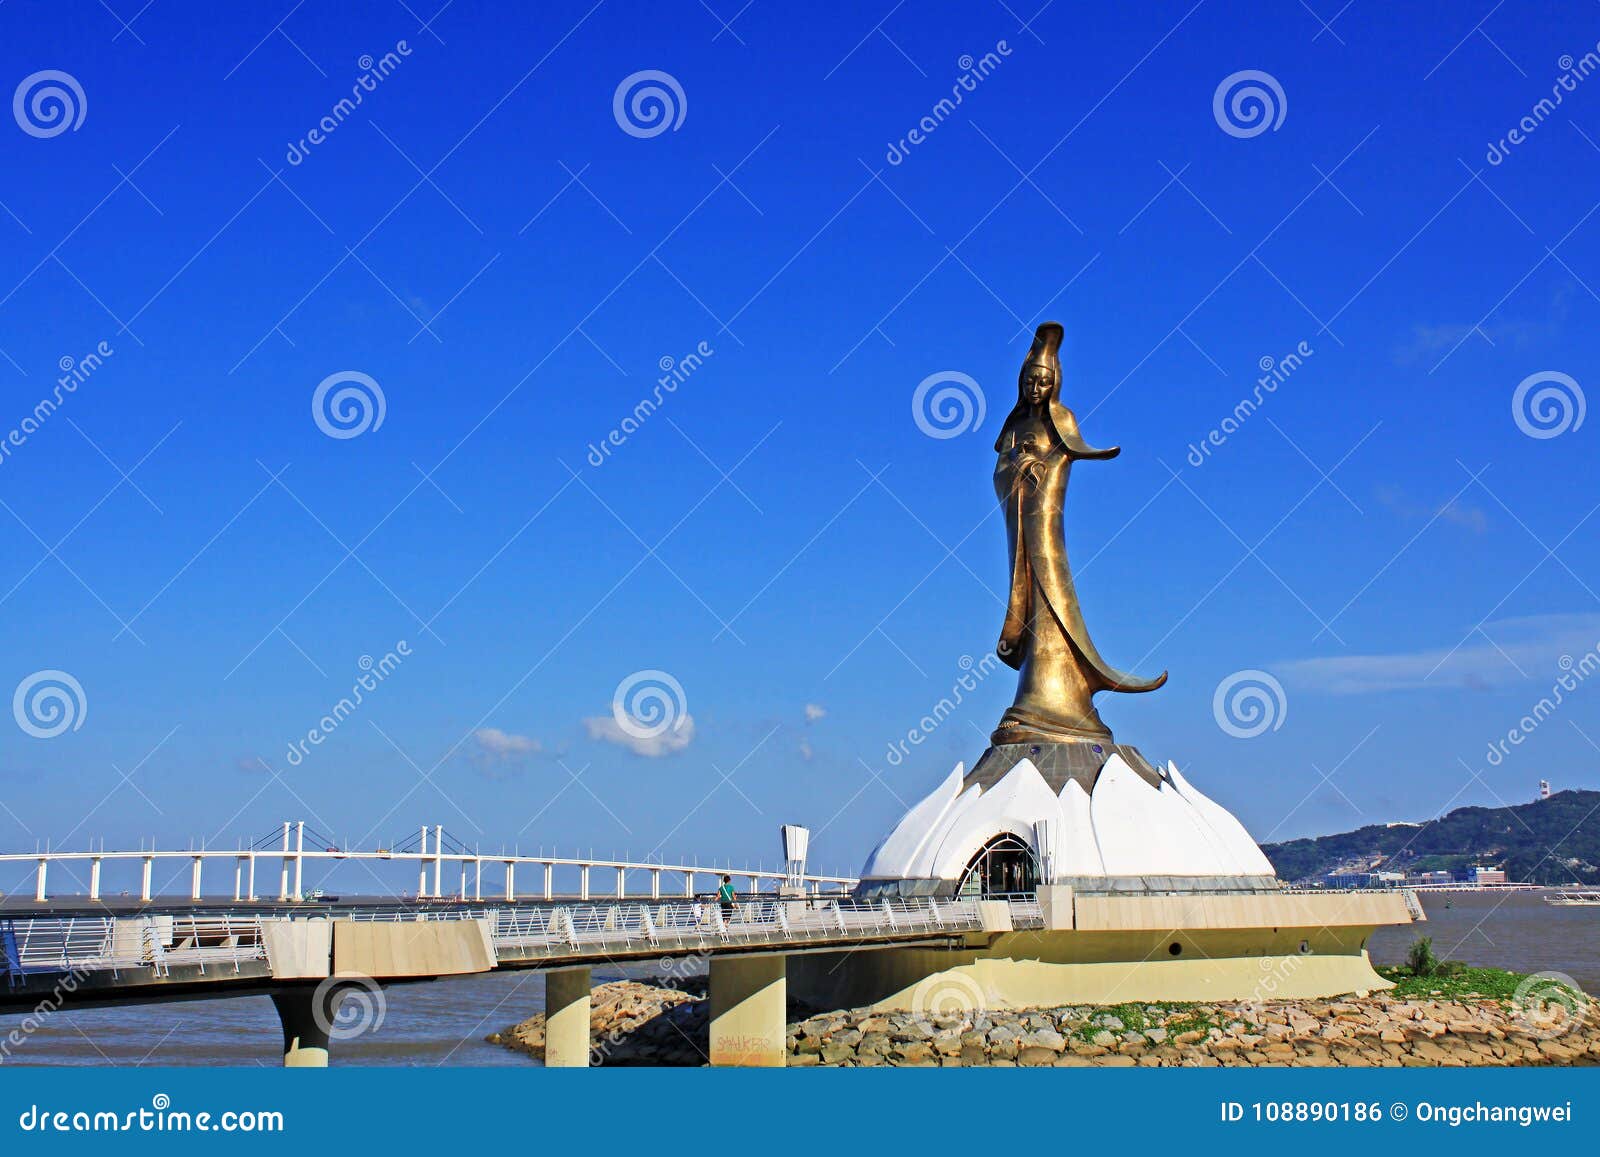 kun iam statue and amizade bridge, macau, china